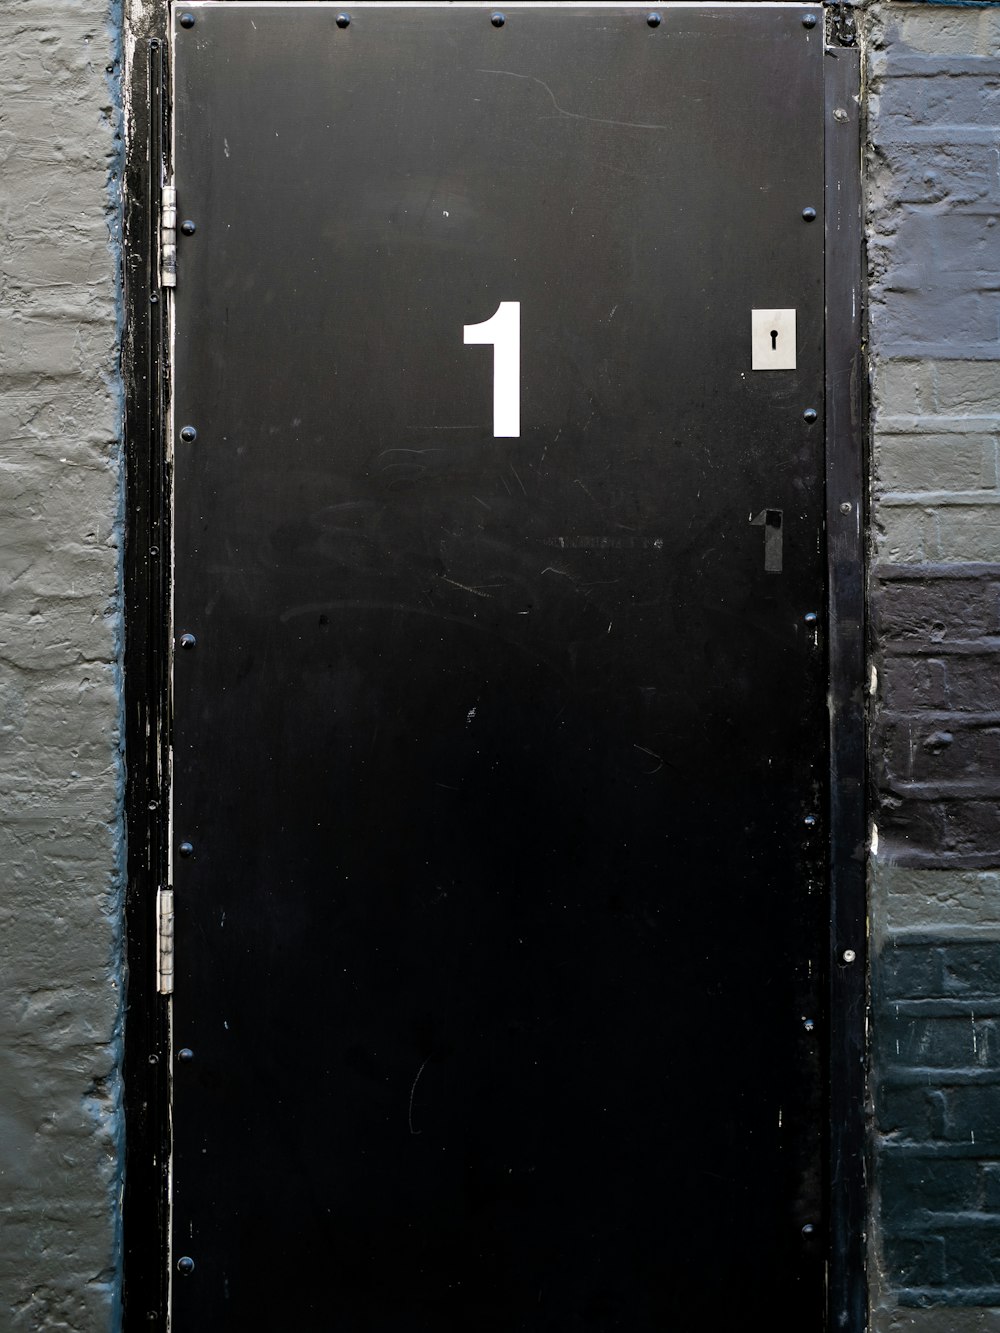 black wooden door with white number 2